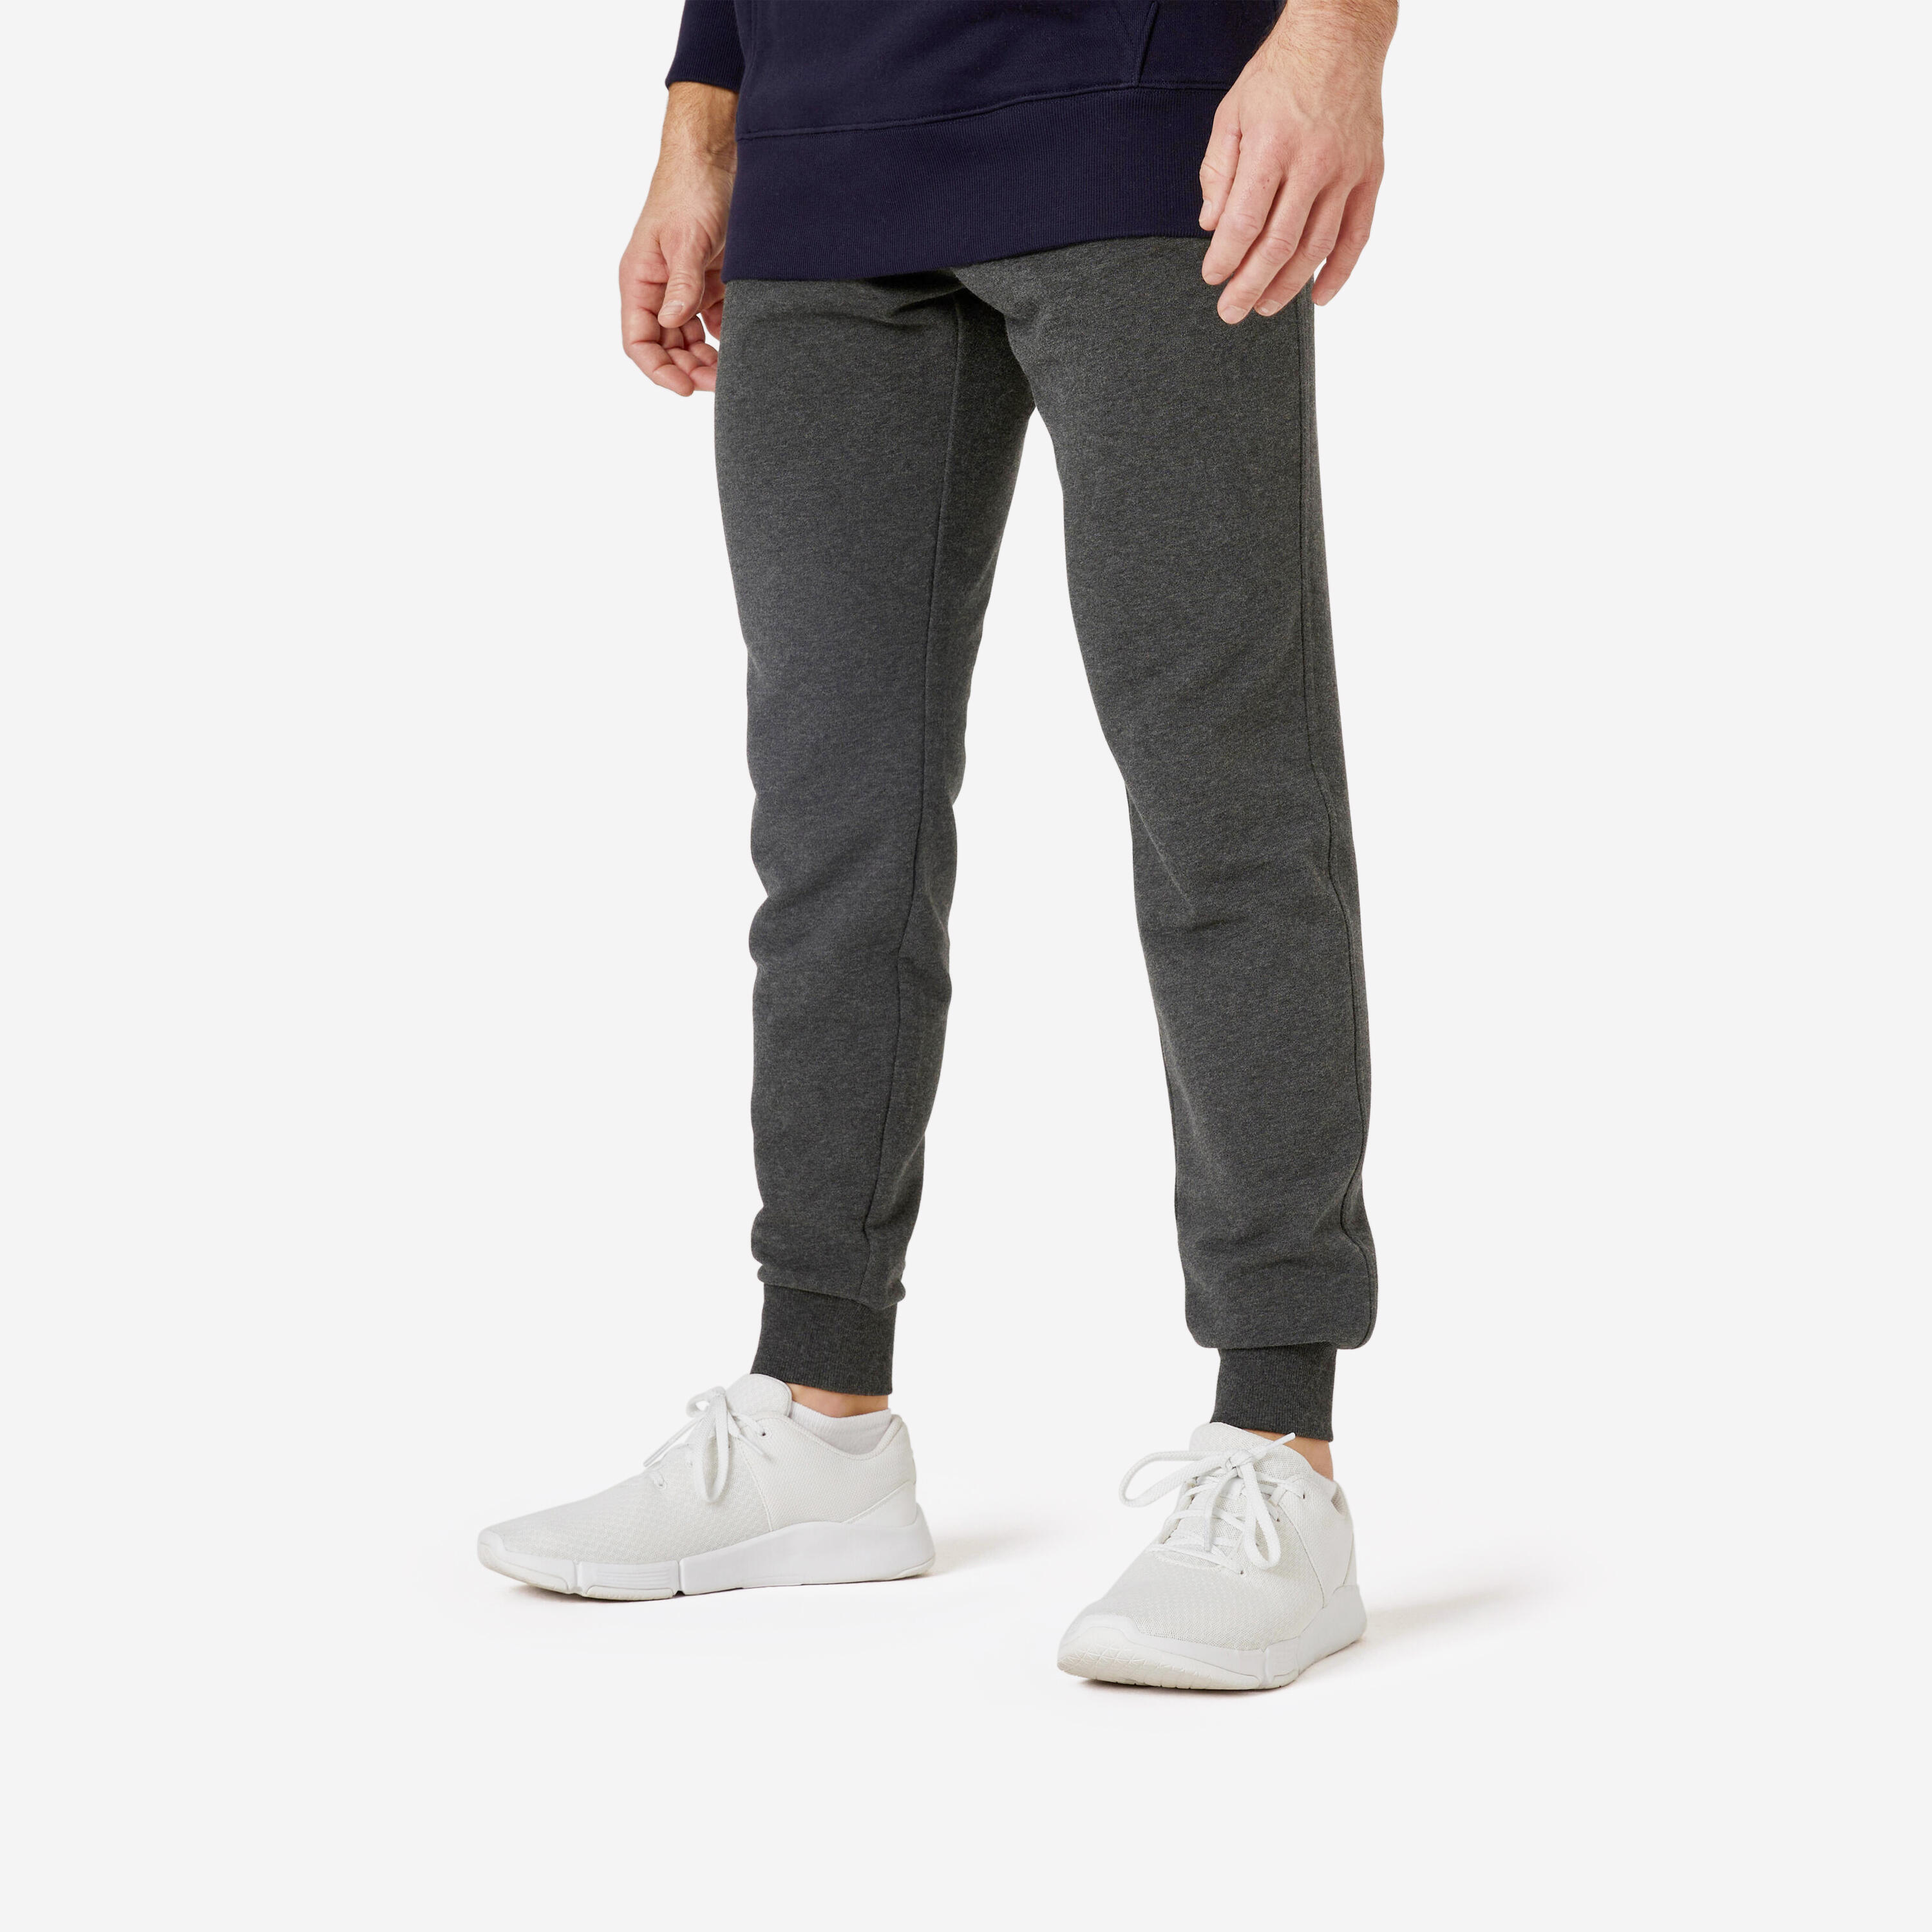 Men's Slim Fit Pants - 500